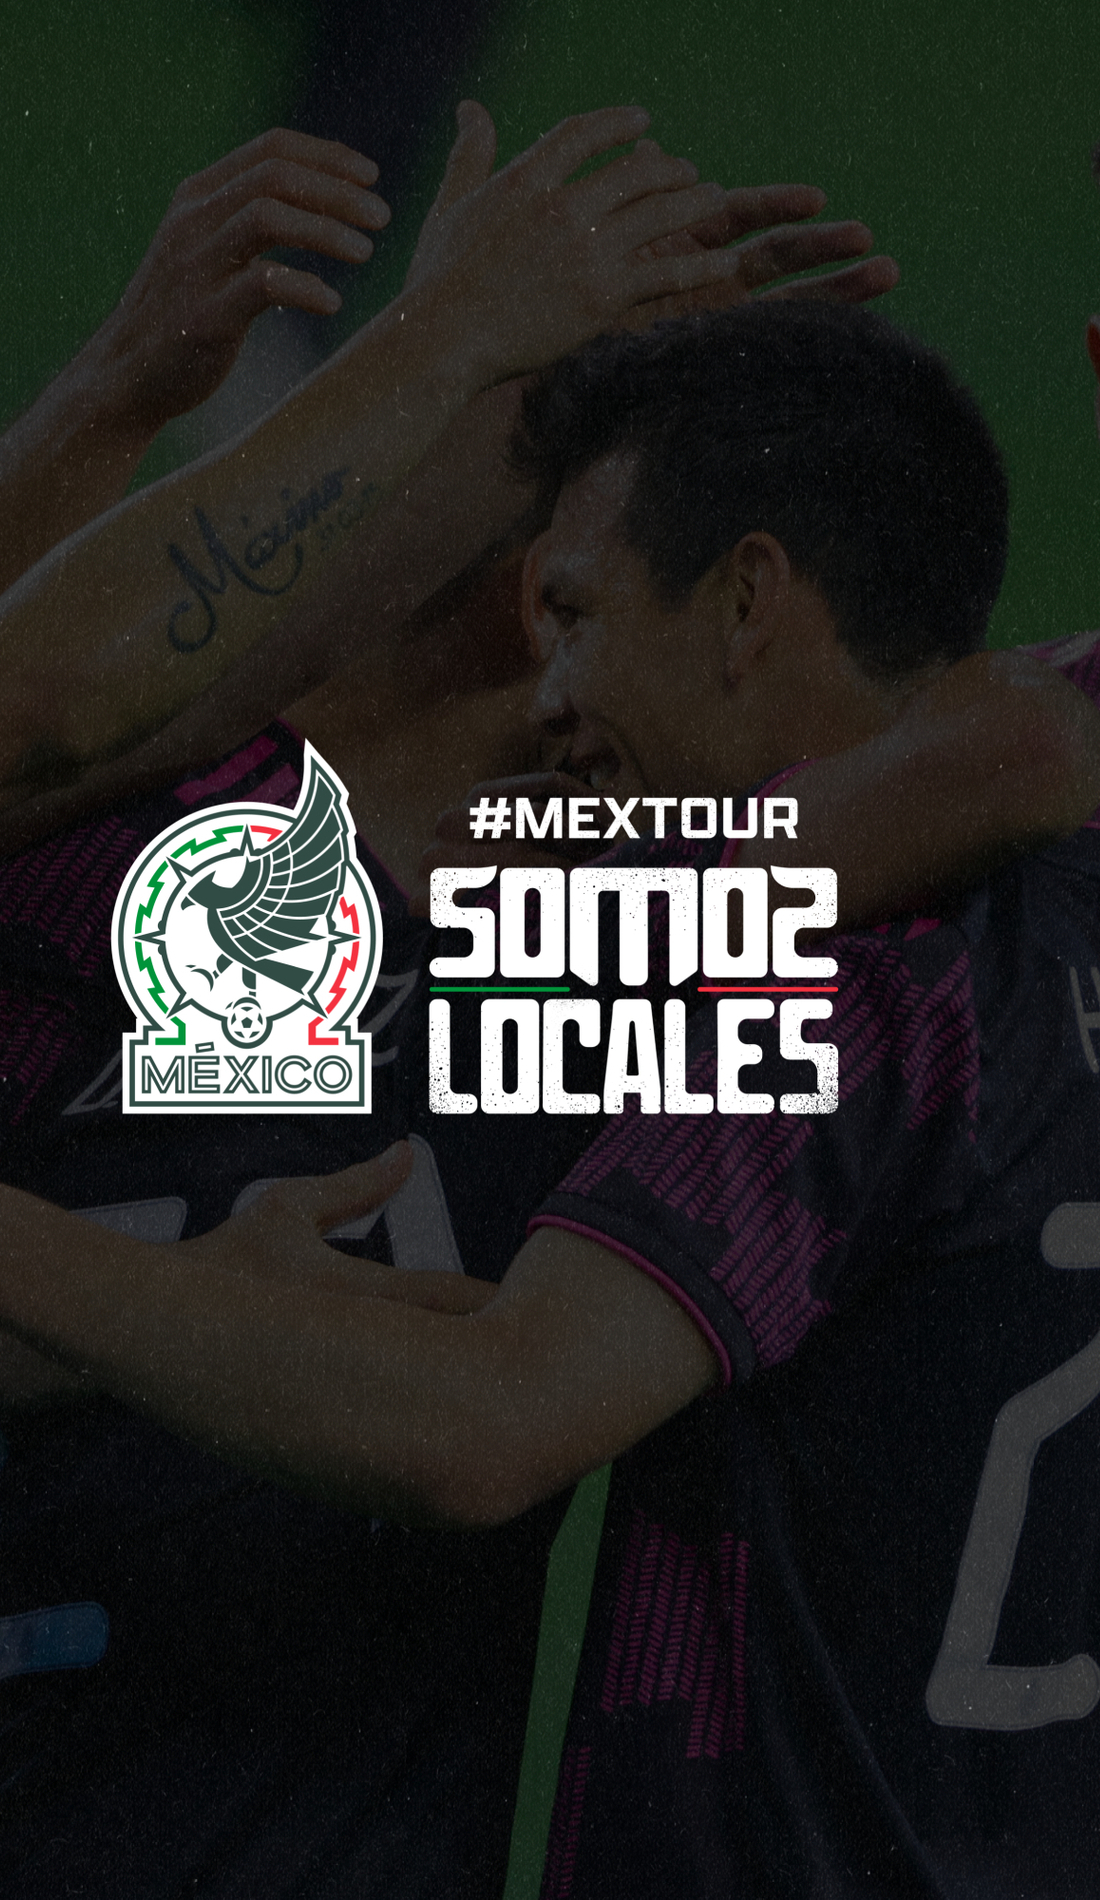 A Mexico National Football Team live event